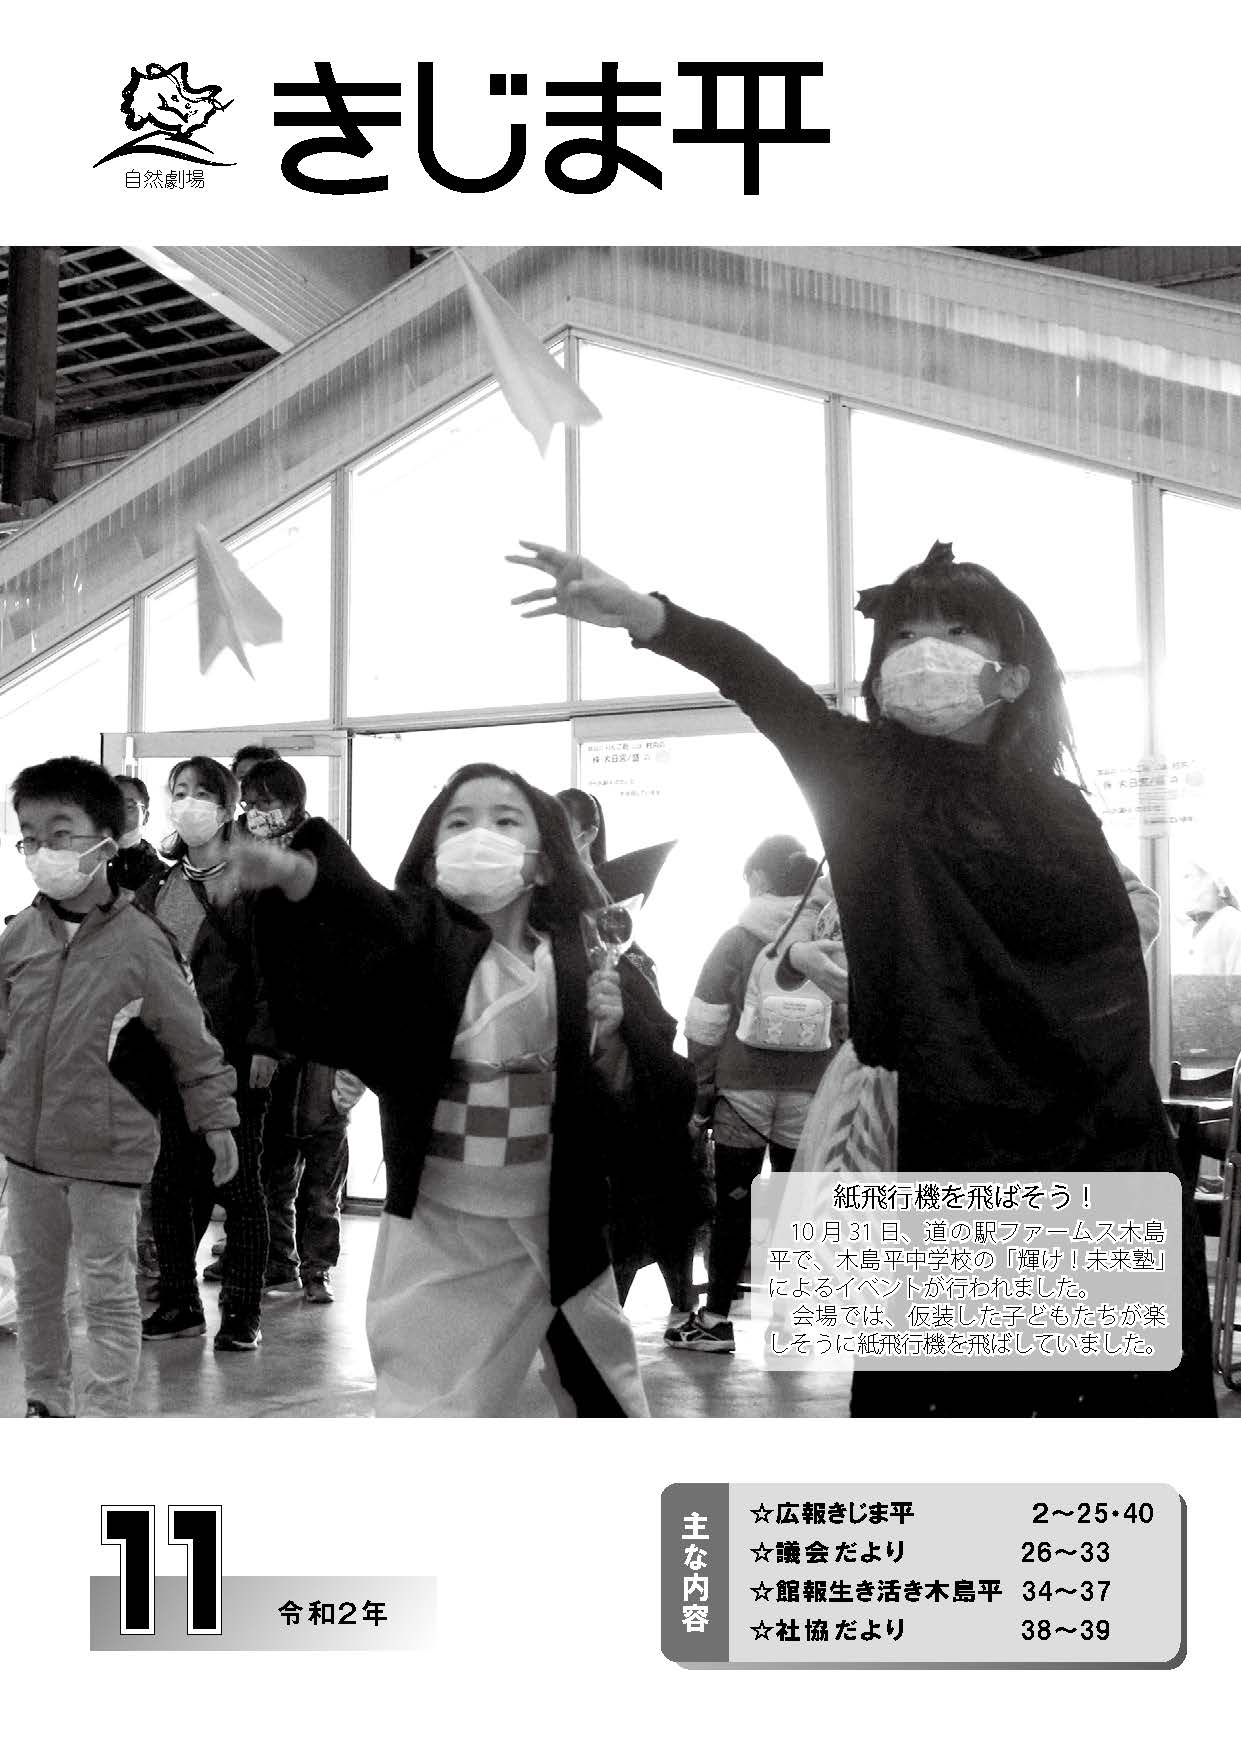 道の駅ファームス木島平で開催されたイベントで、楽しそうに紙飛行機を飛ばす子供たちの様子